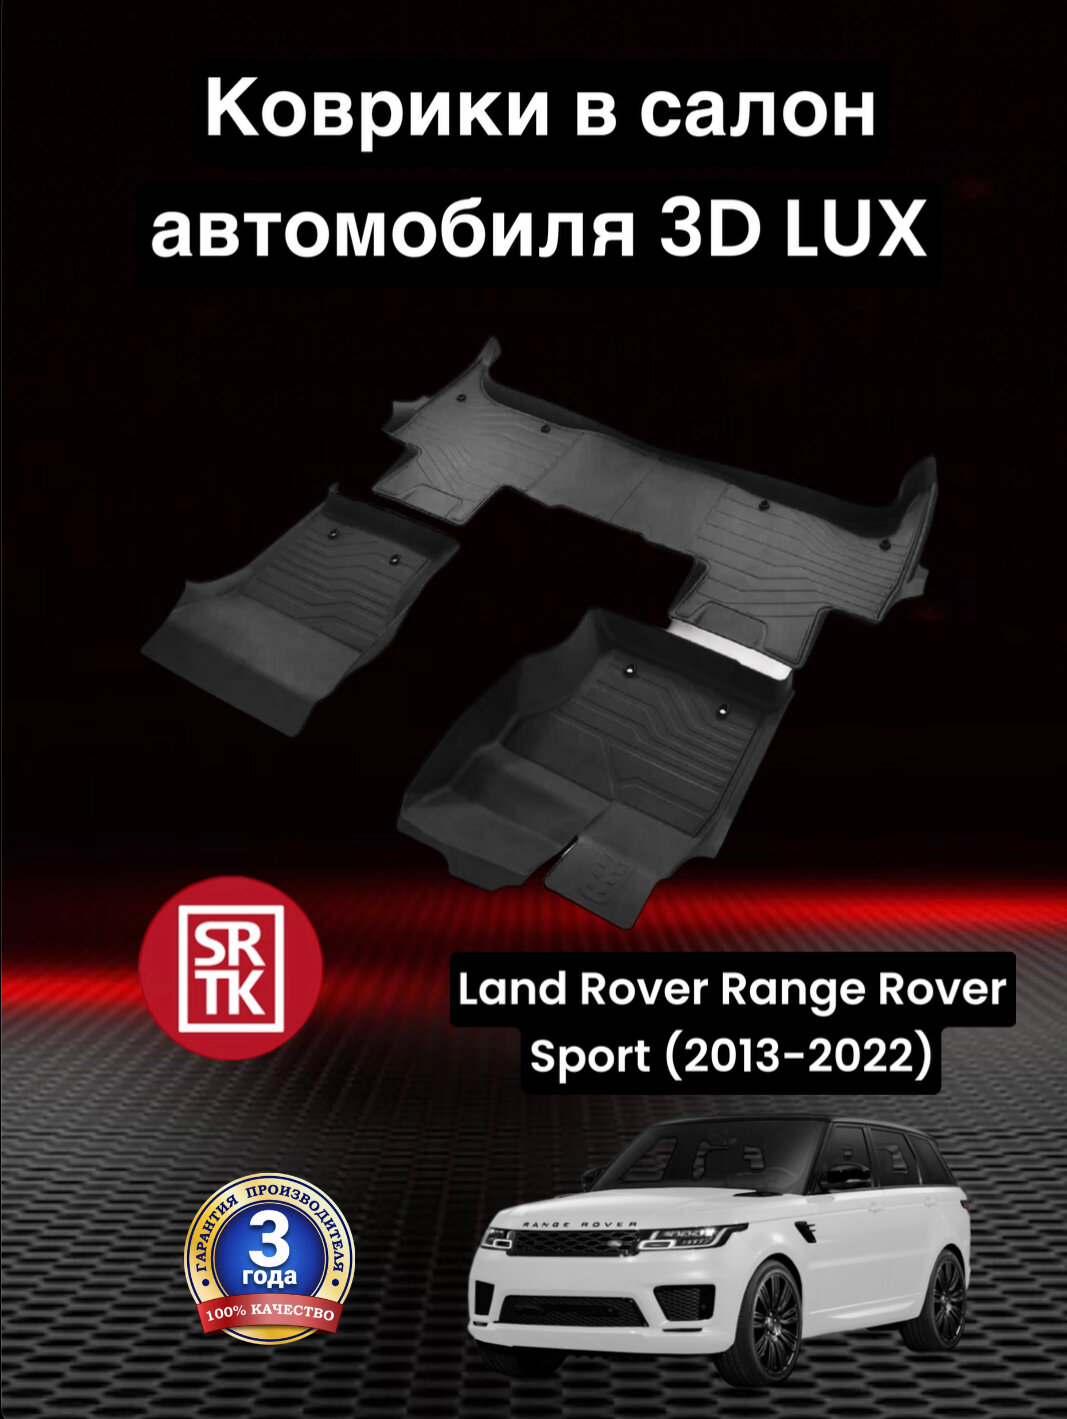 Коврики резиновые Ленд Ровер Рендж Ровер Спорт (2013-2022)/ Land Rover Range Rover Sport (2013-2022)/ 3D LUX SRTK (Саранск) комплект в салон